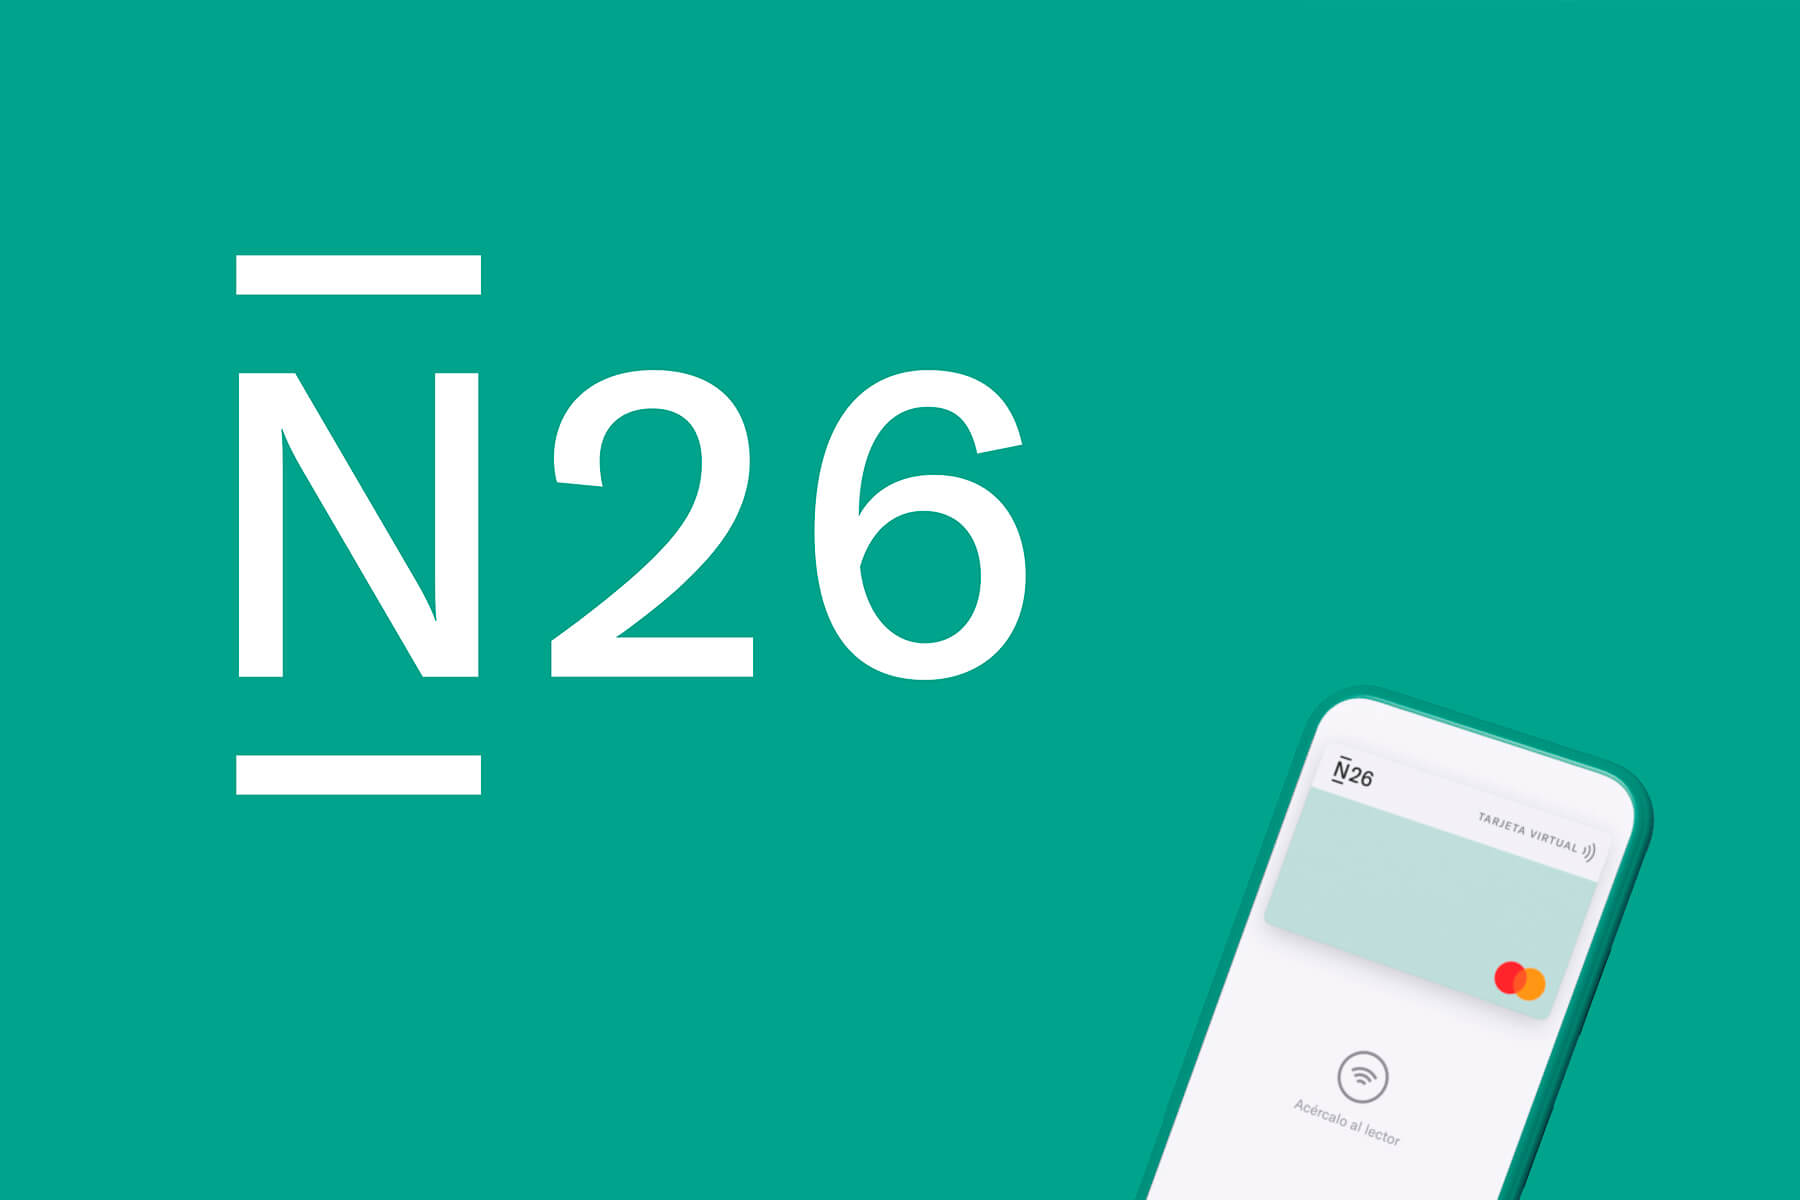 logo de la tarjeta n26 y su color característico y un ejemplo de la tarjeta virtual que puede obtenerse fácilmente y así tener la N26 para viajar gratuitamente